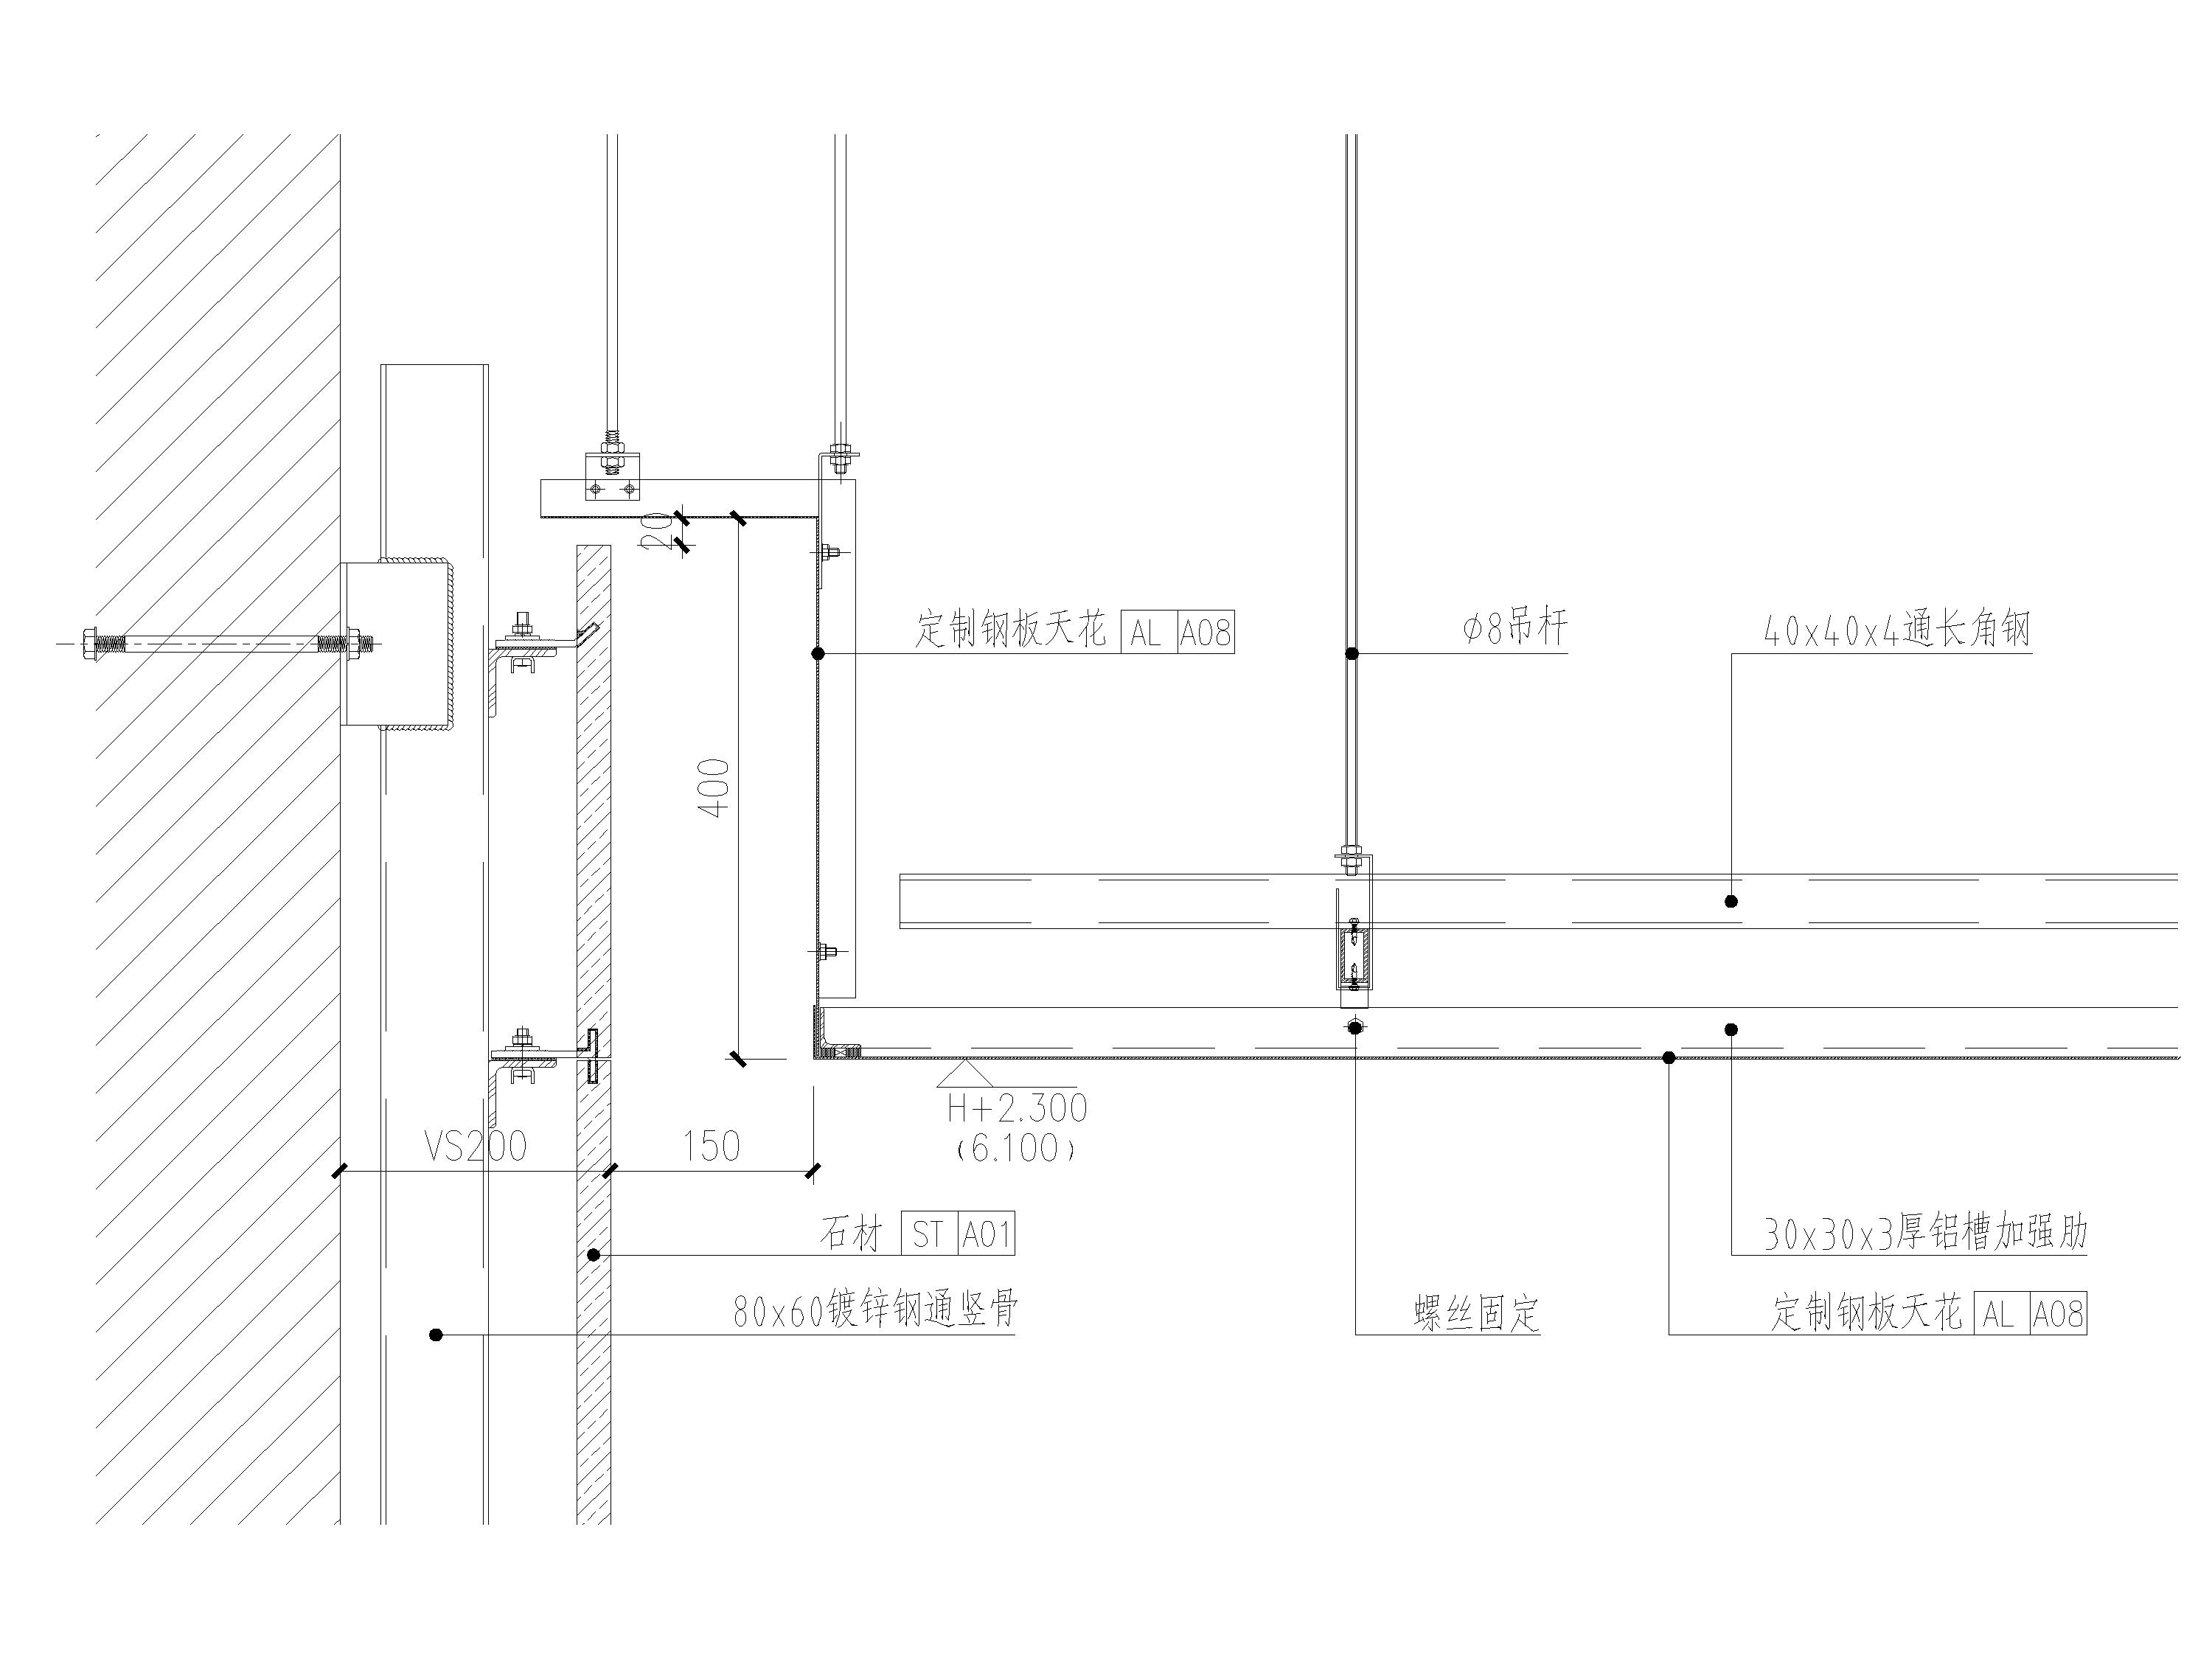 石膏板,钢板,铝板,铝格栅天花吊顶节点图